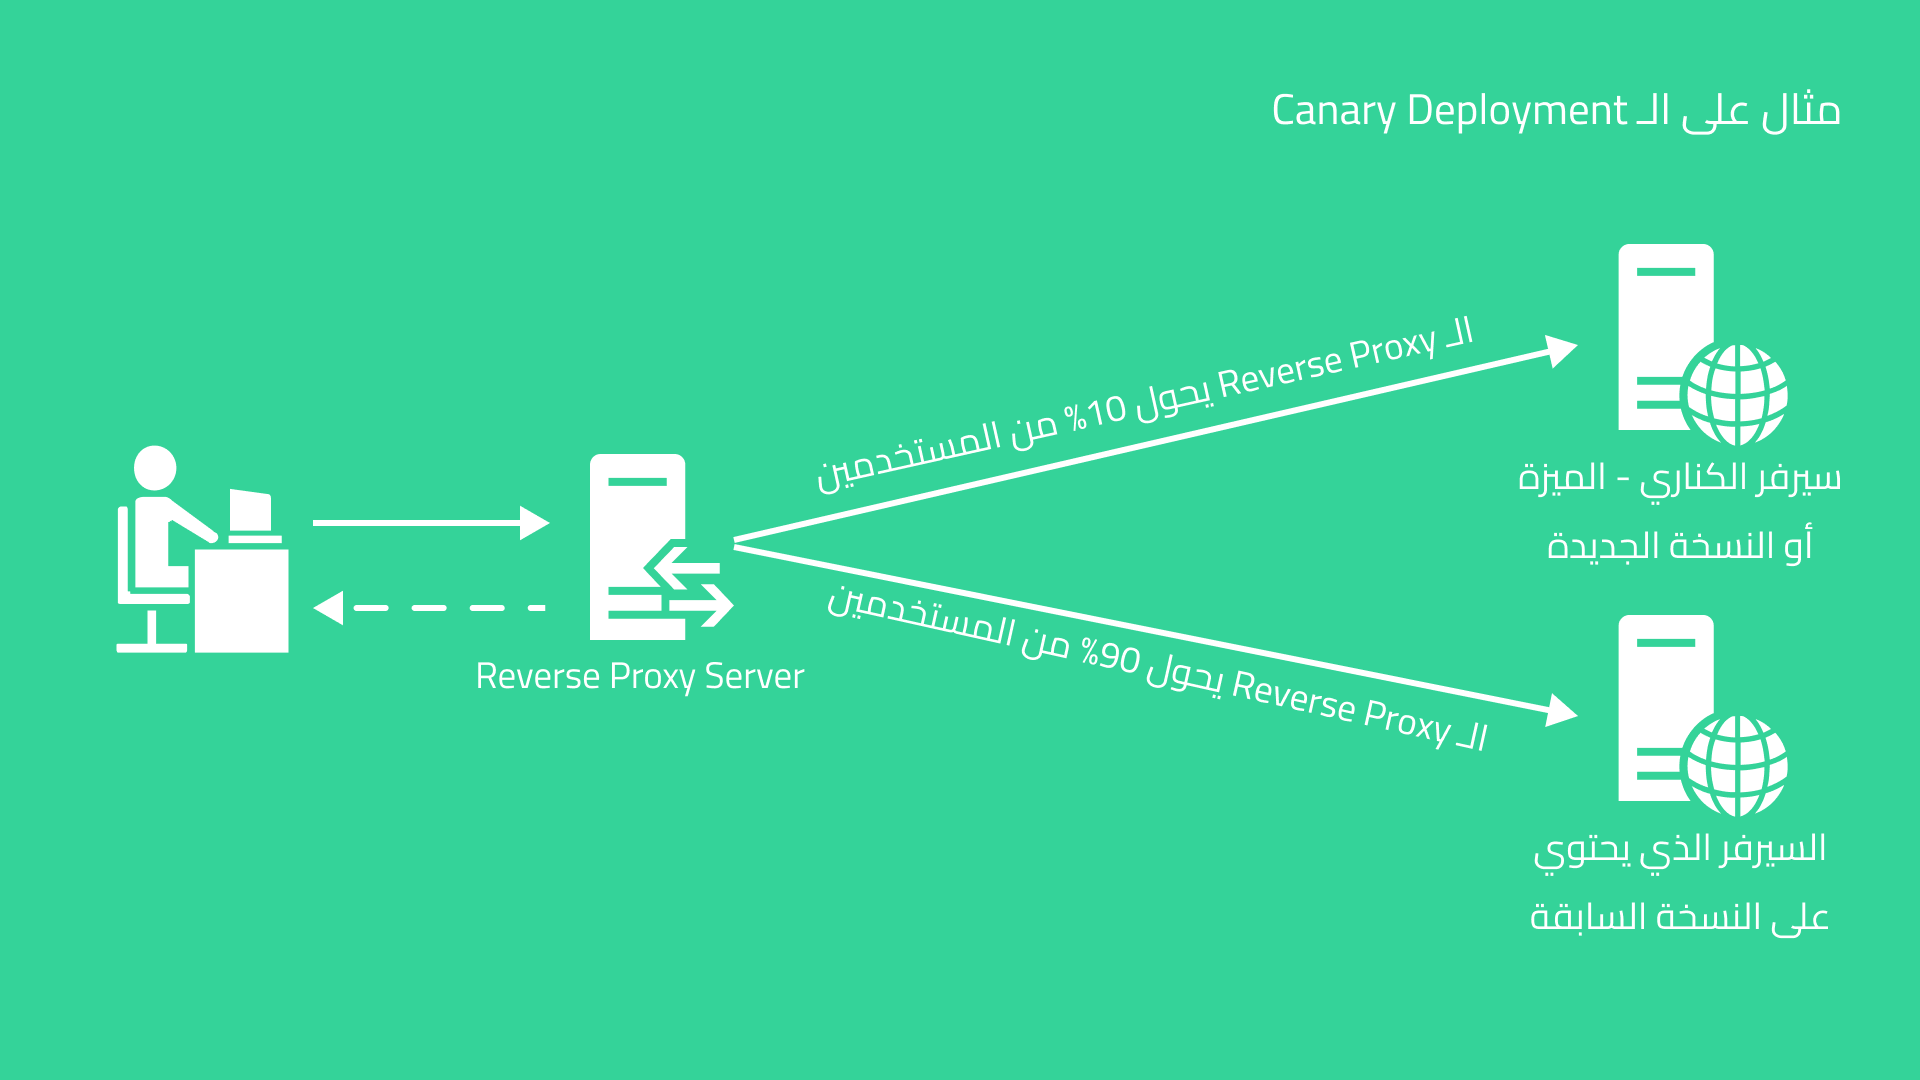 الصورة توضح مهمة الـ Reverse Proxy في الـ Canary Deployment / Canary Release